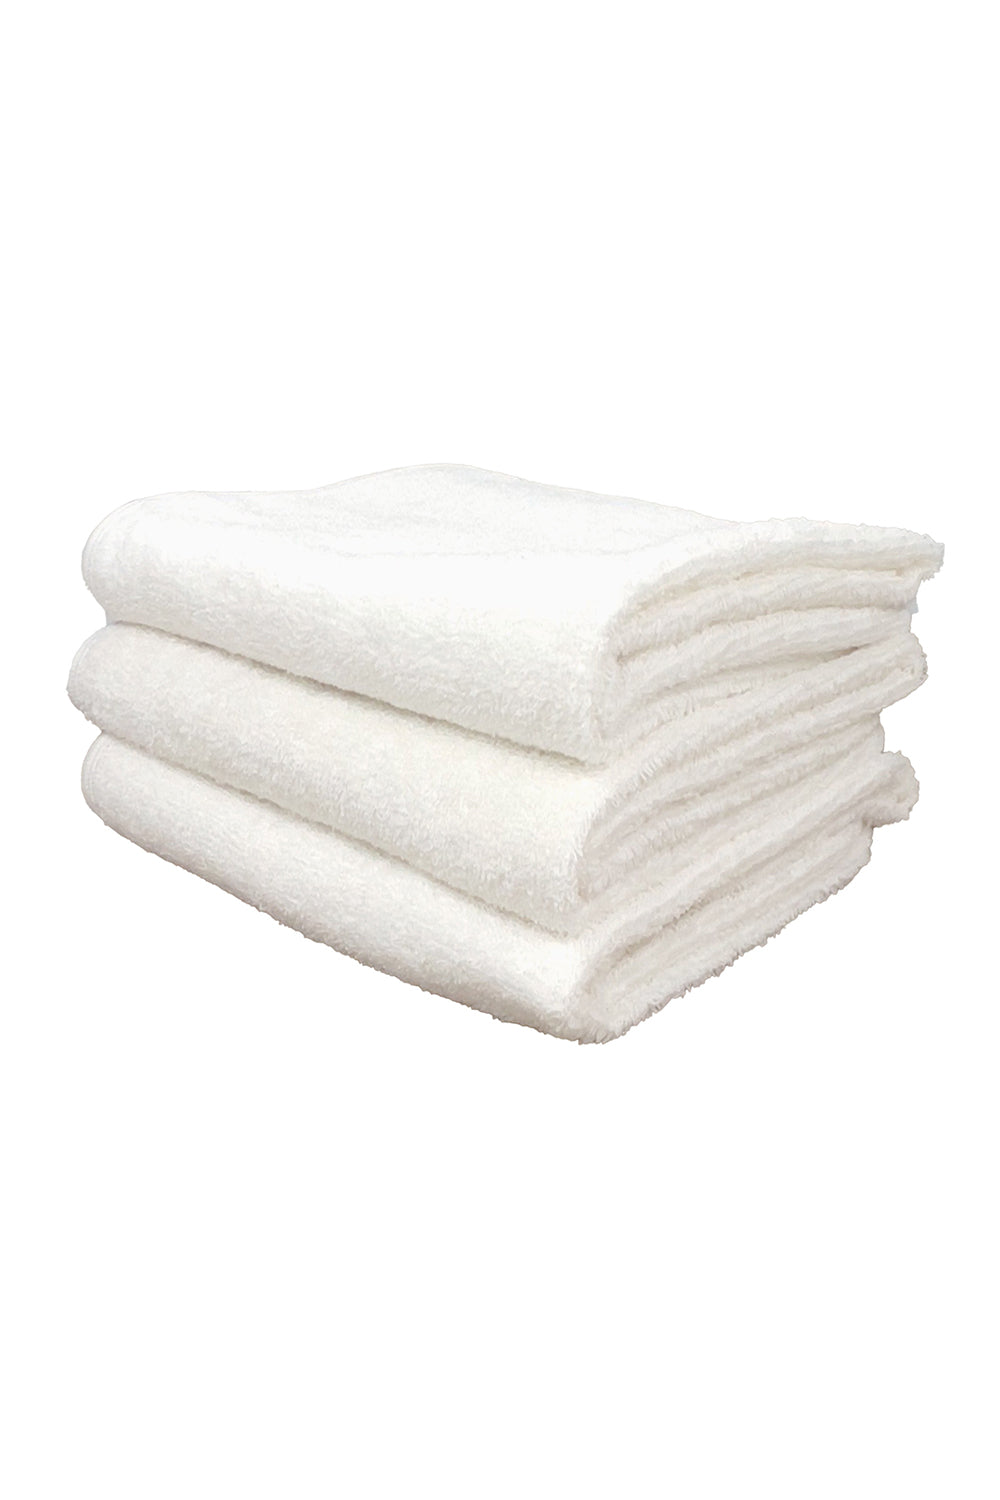 Jungmaven Hand Towel  Jungmaven Hemp Goods